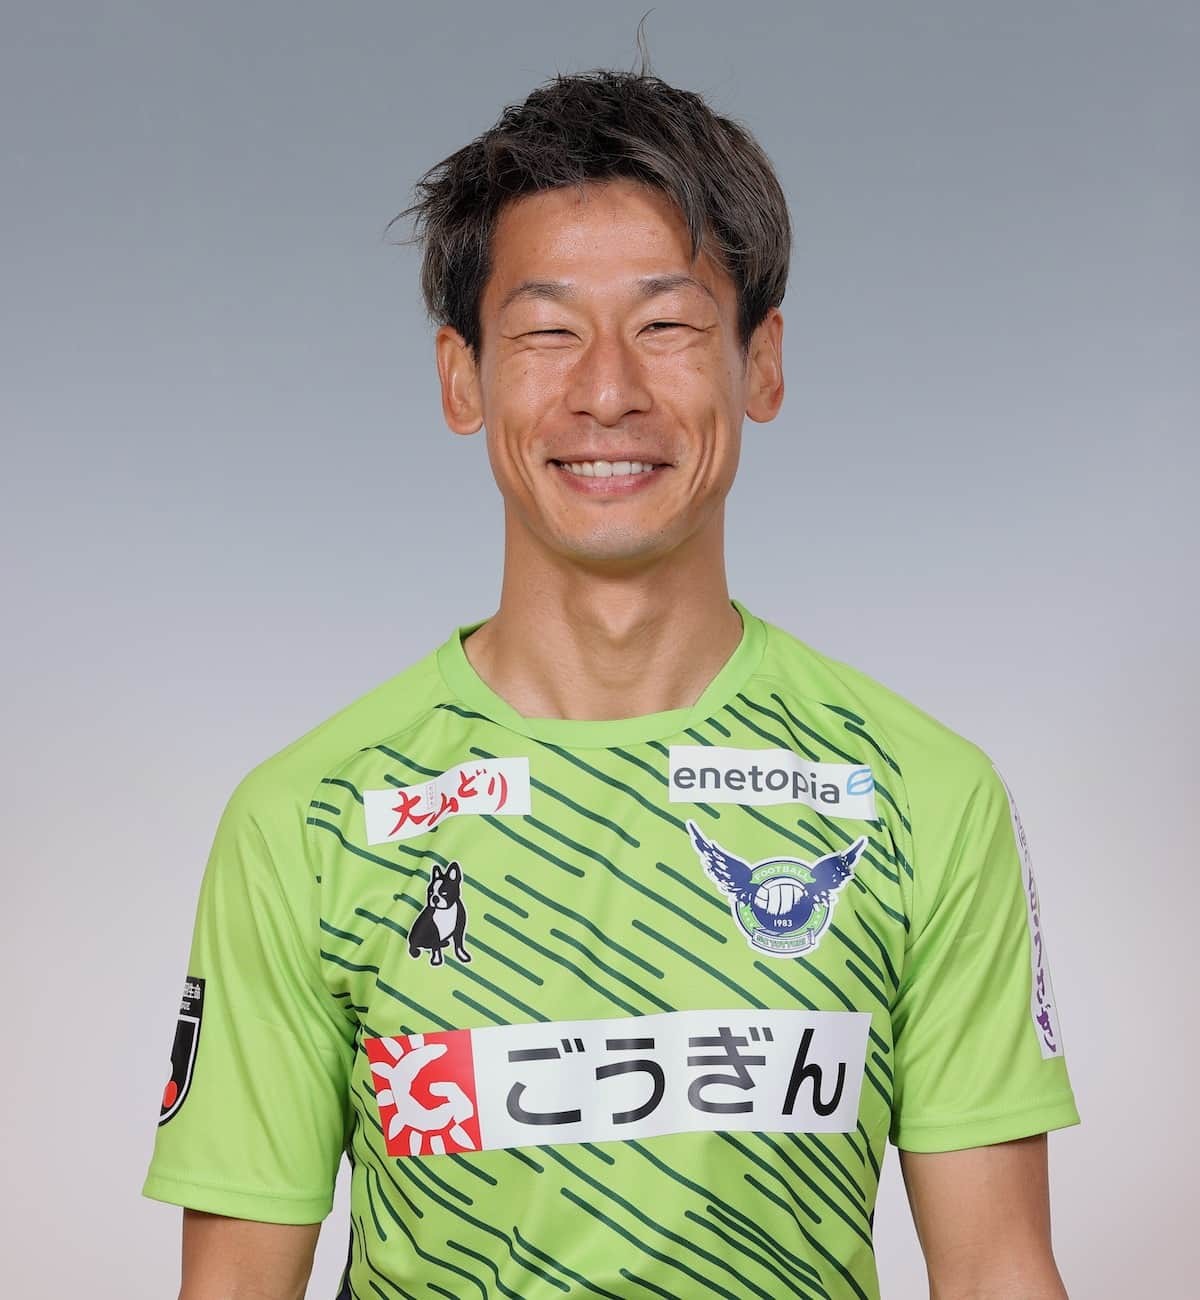 鳥取県のプロサッカークラブ「ガイナーレ鳥取」の田中恵太選手